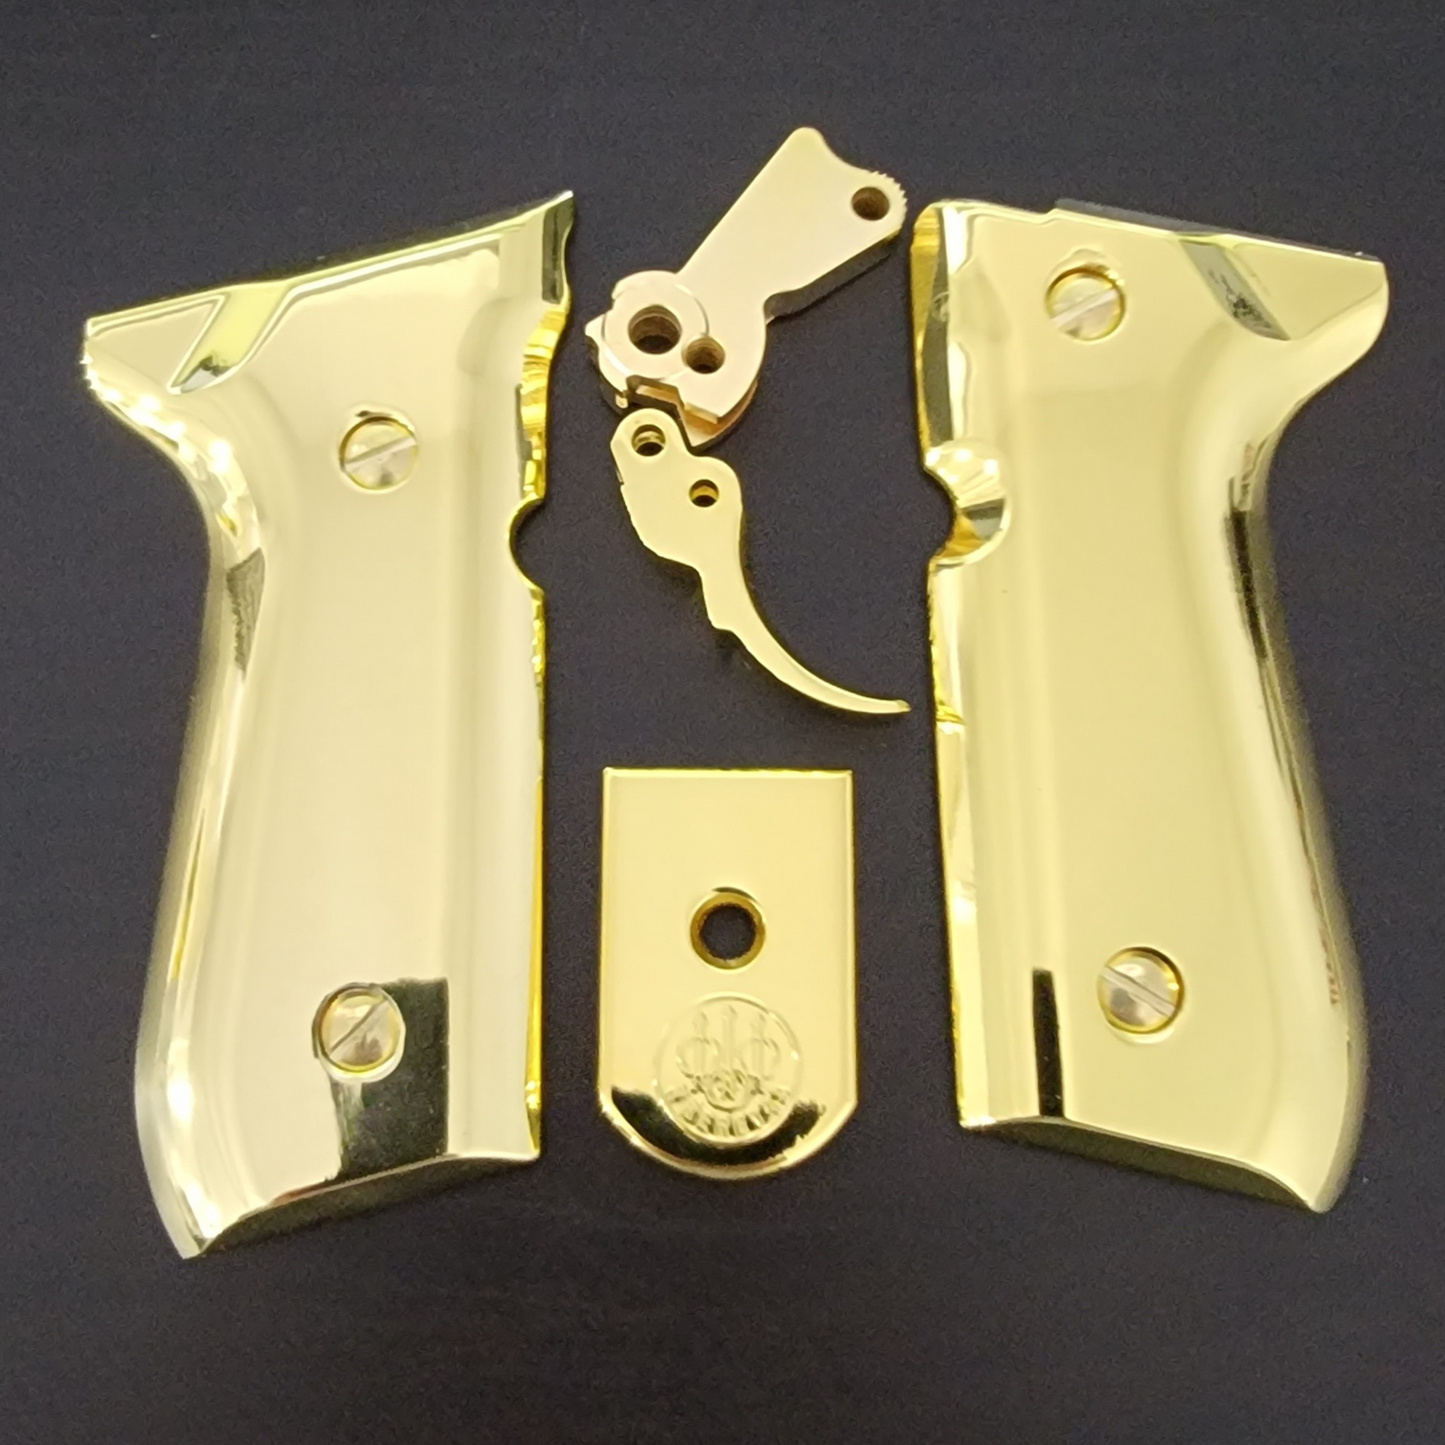 Combo Beretta Trigger 92F Metal Grips Beretta 92F, 92FS, M9, 96 Models 24K Gold